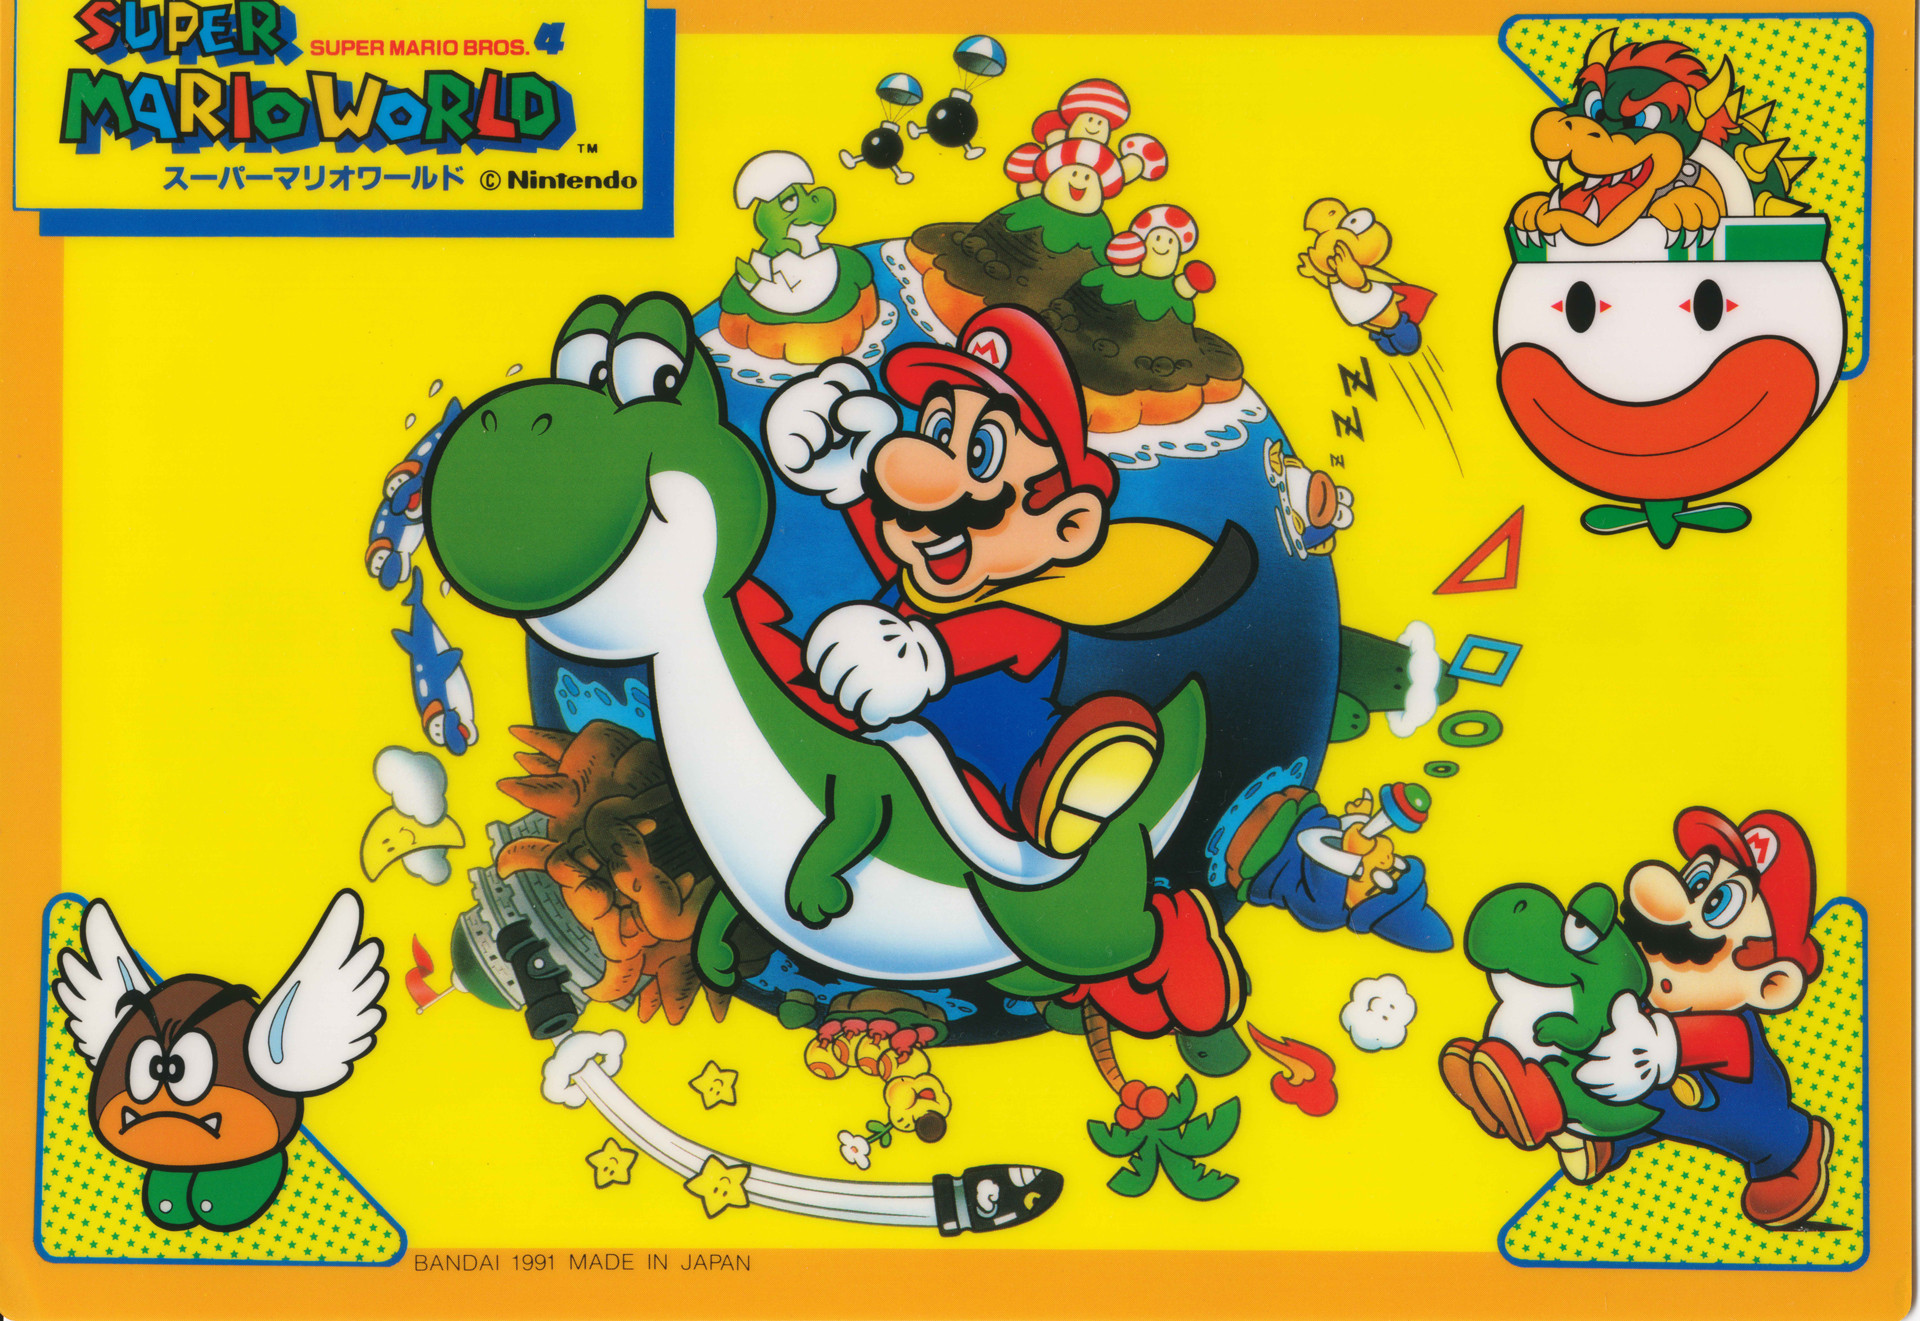 Jogador quebra recorde ao zerar 'Super Mario' vendado - Olhar Digital